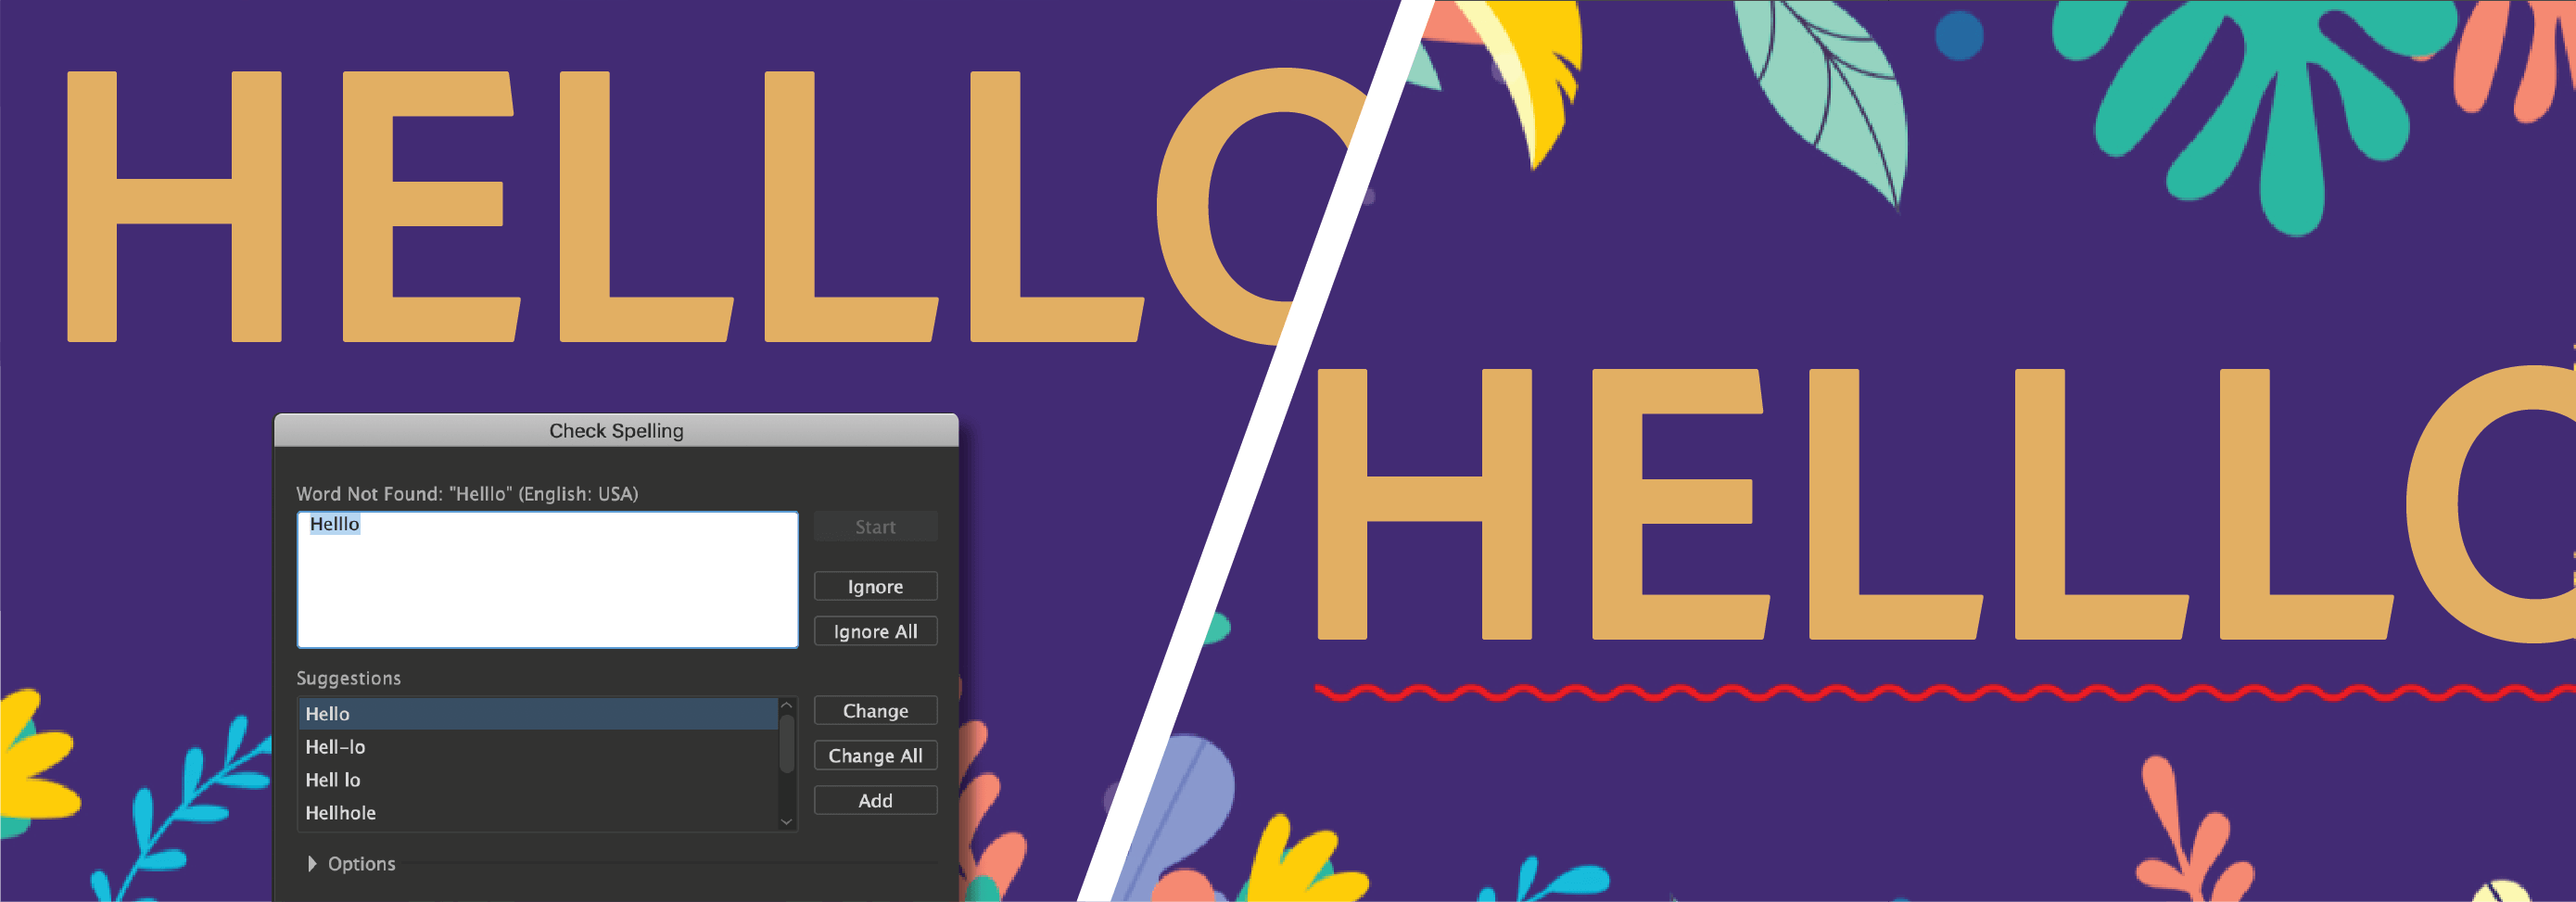 Adobe Illustrator 2020 sẽ giúp bạn tránh mắc lỗi